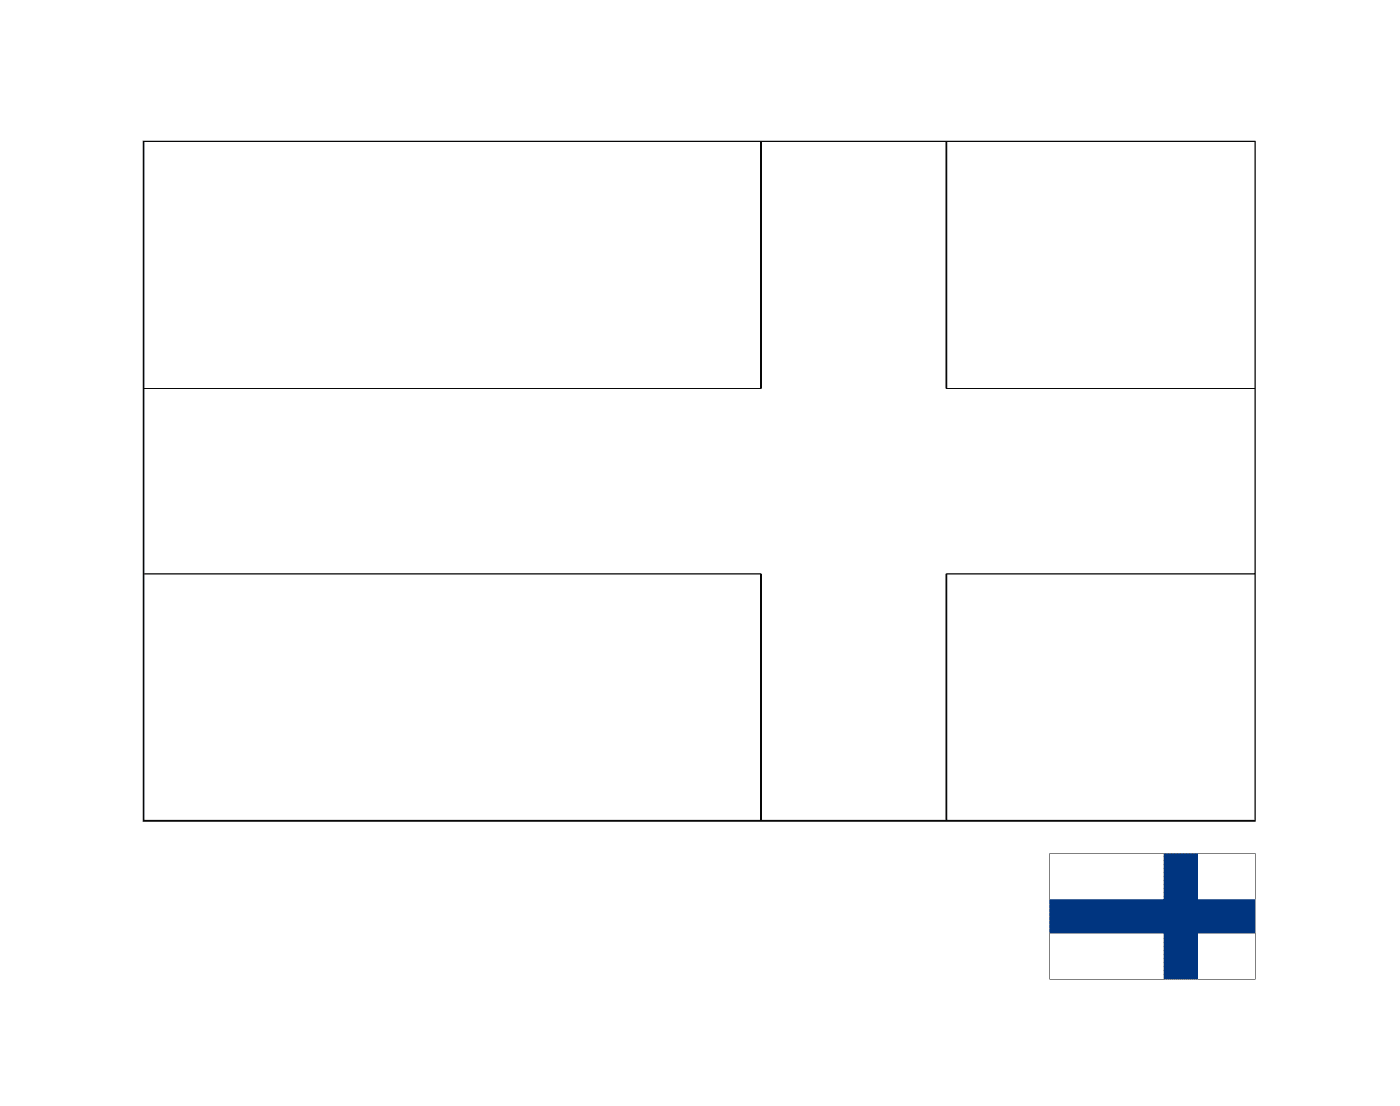  फिनलैंड का झंडा 